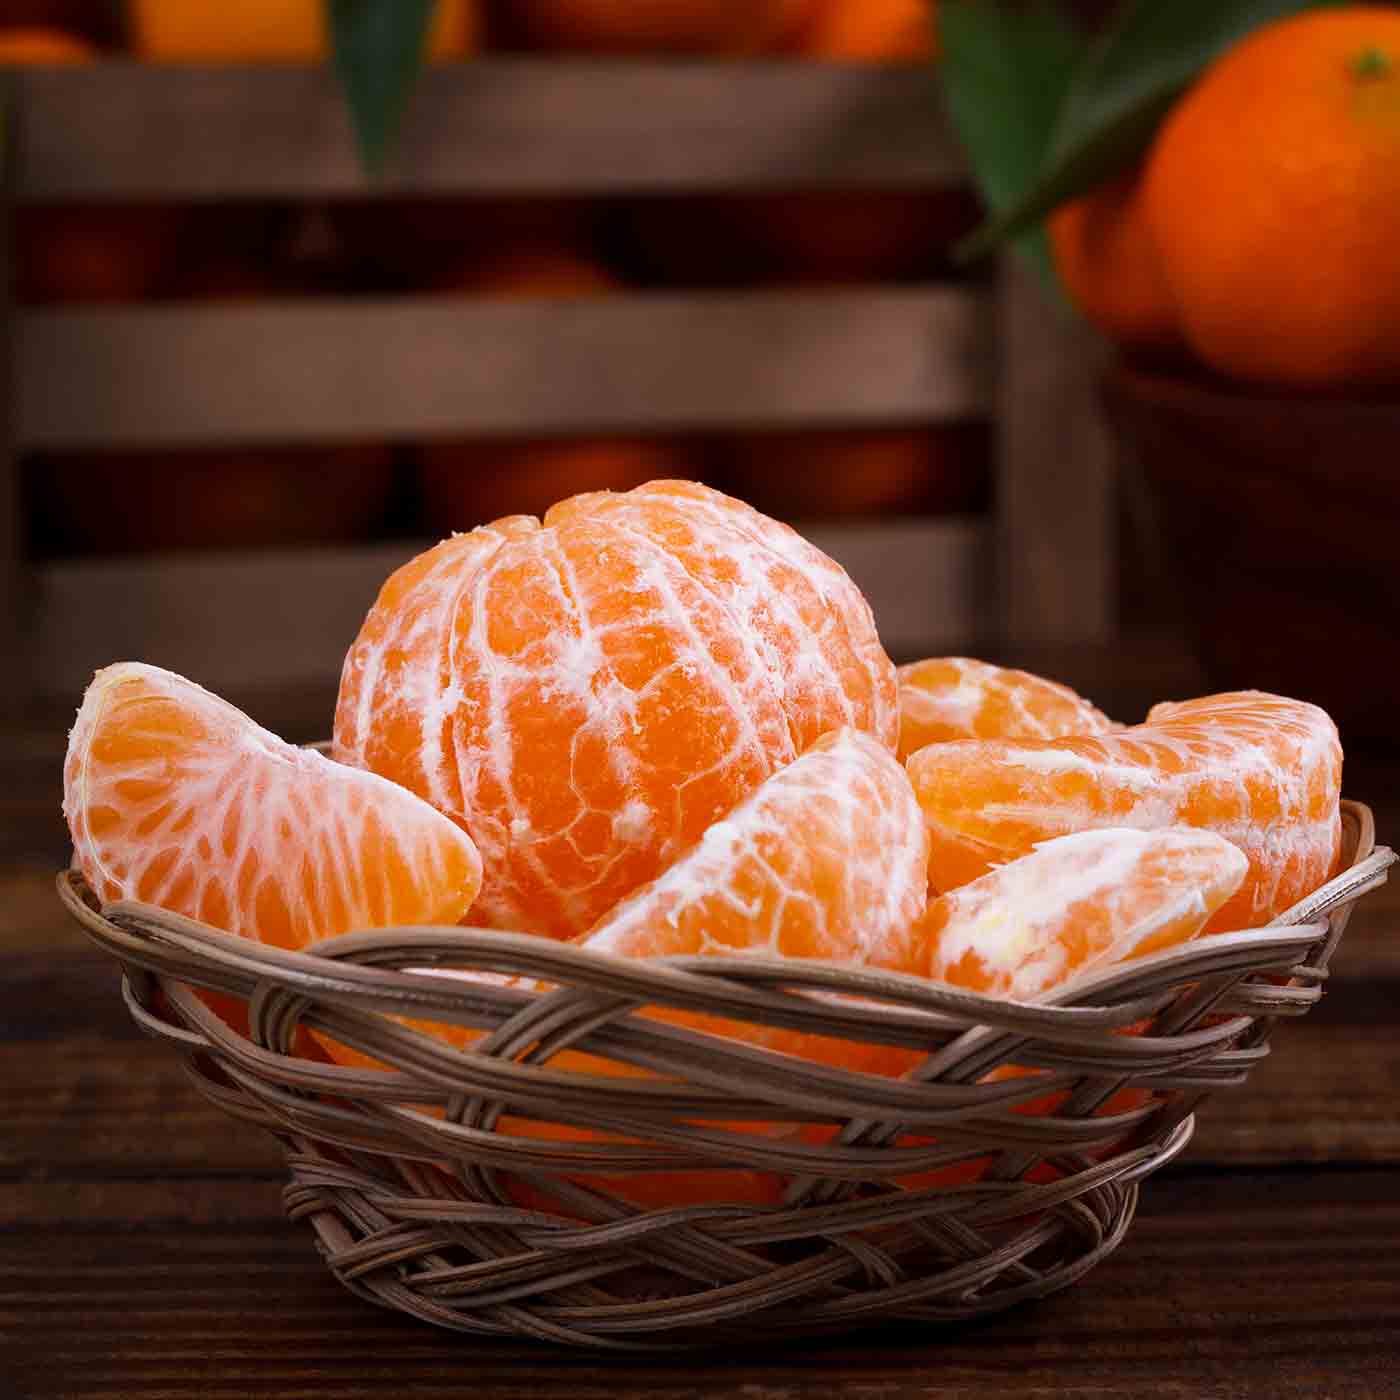 Geschaelte Mandarinen in einer Schale Fun Fact Ingwer Mandarine Tee online kaufen bei Genussio